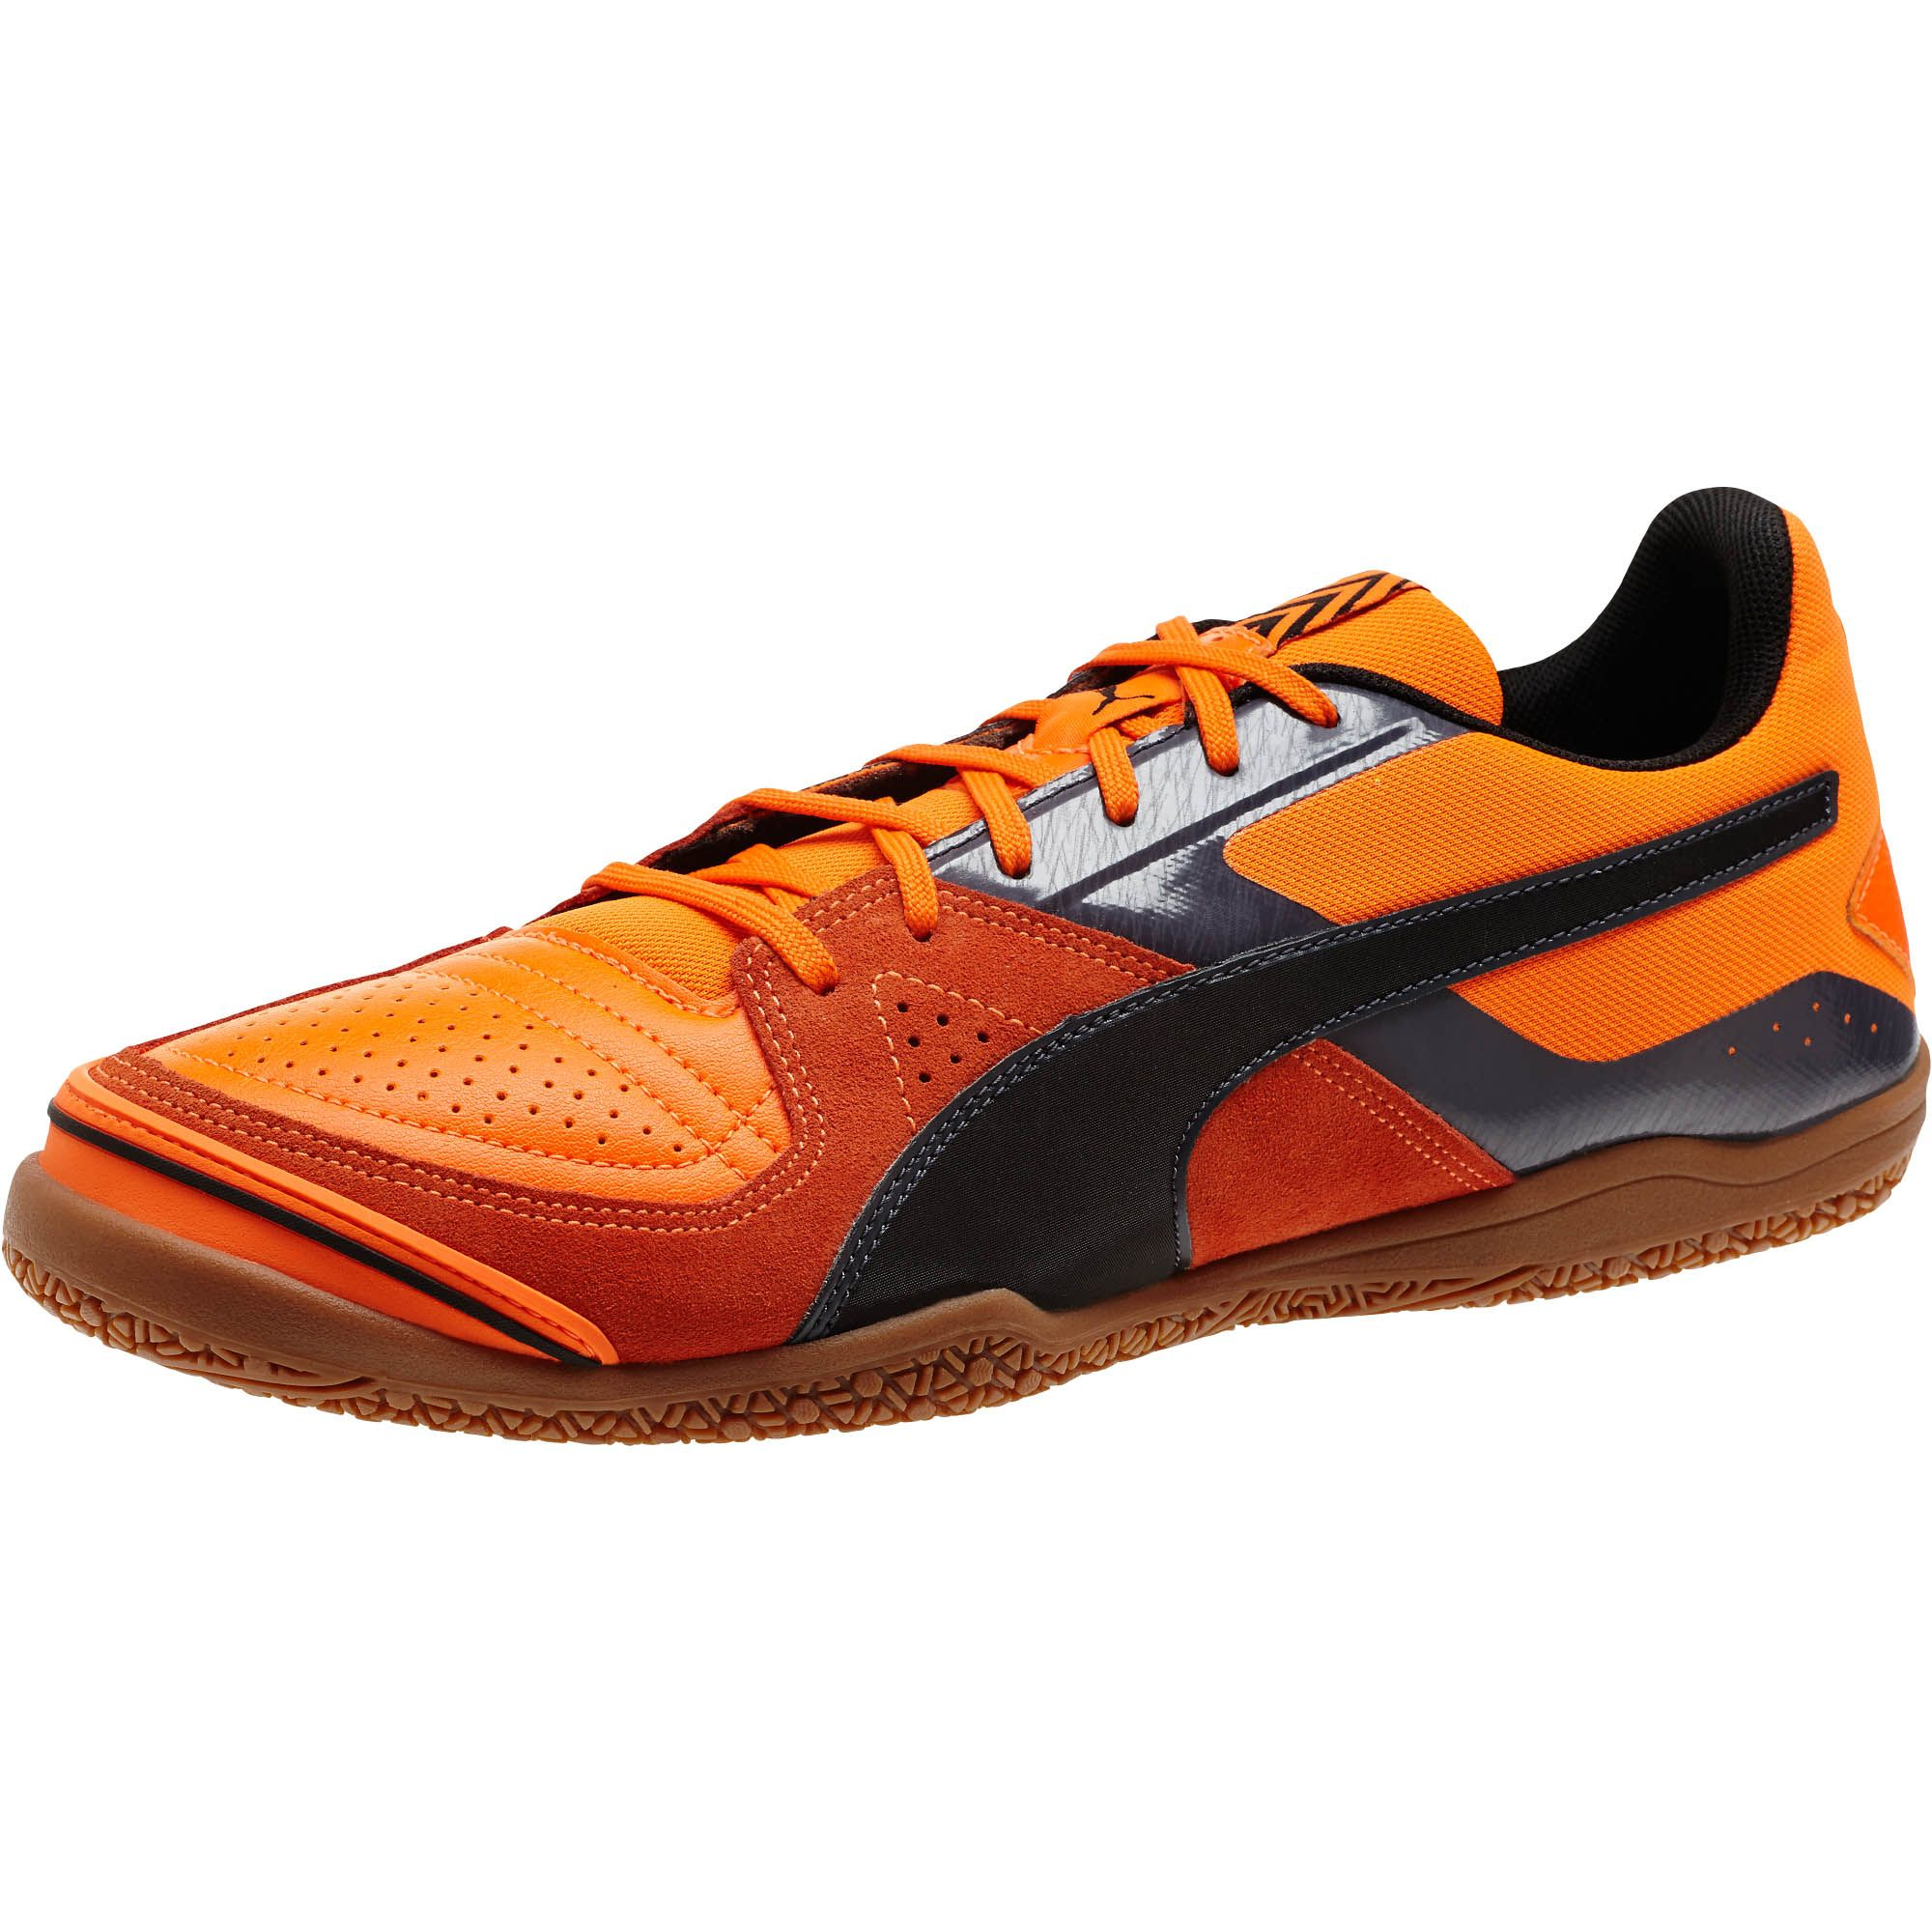 puma men's indoor soccer shoes